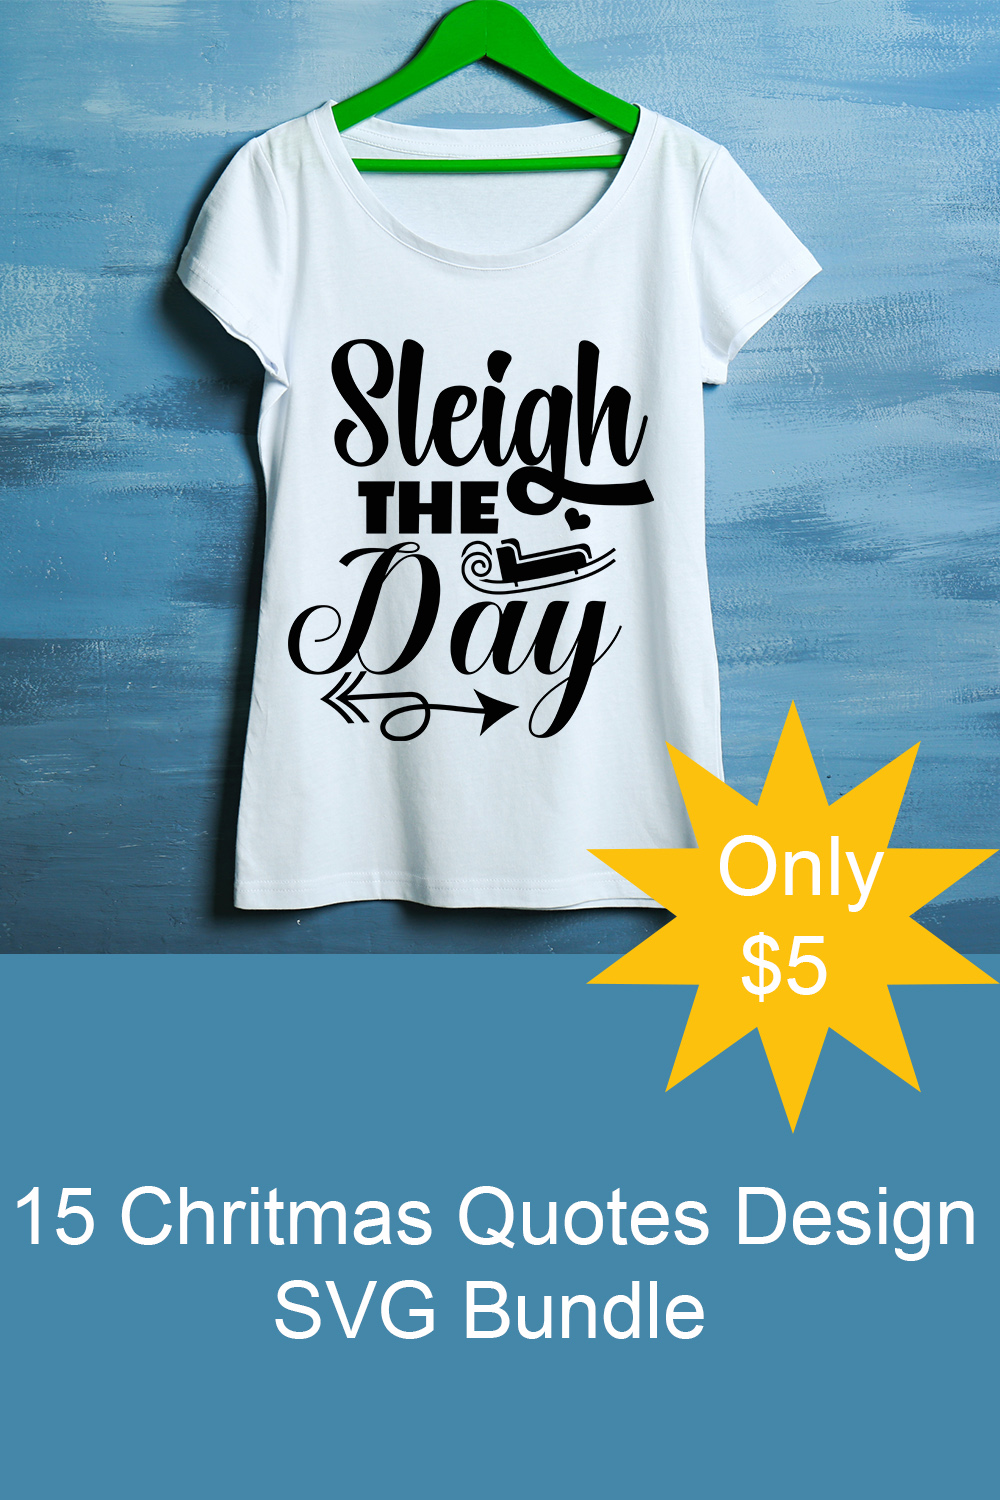 T-shirt Chritmas Quotes Design SVG Bundle pinterest image.